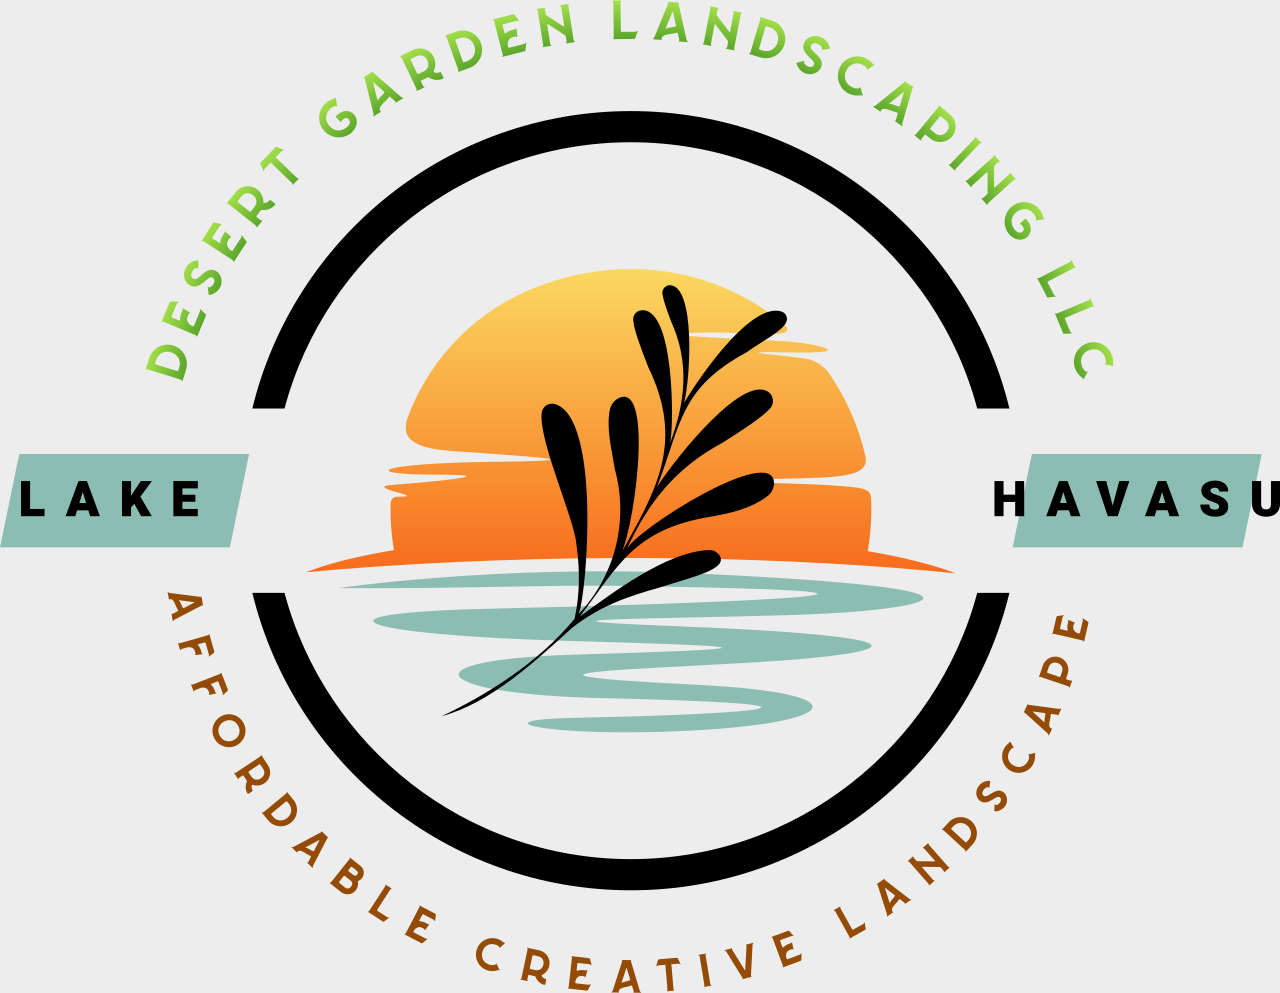 Desert Garden Landscaping LLC's logo